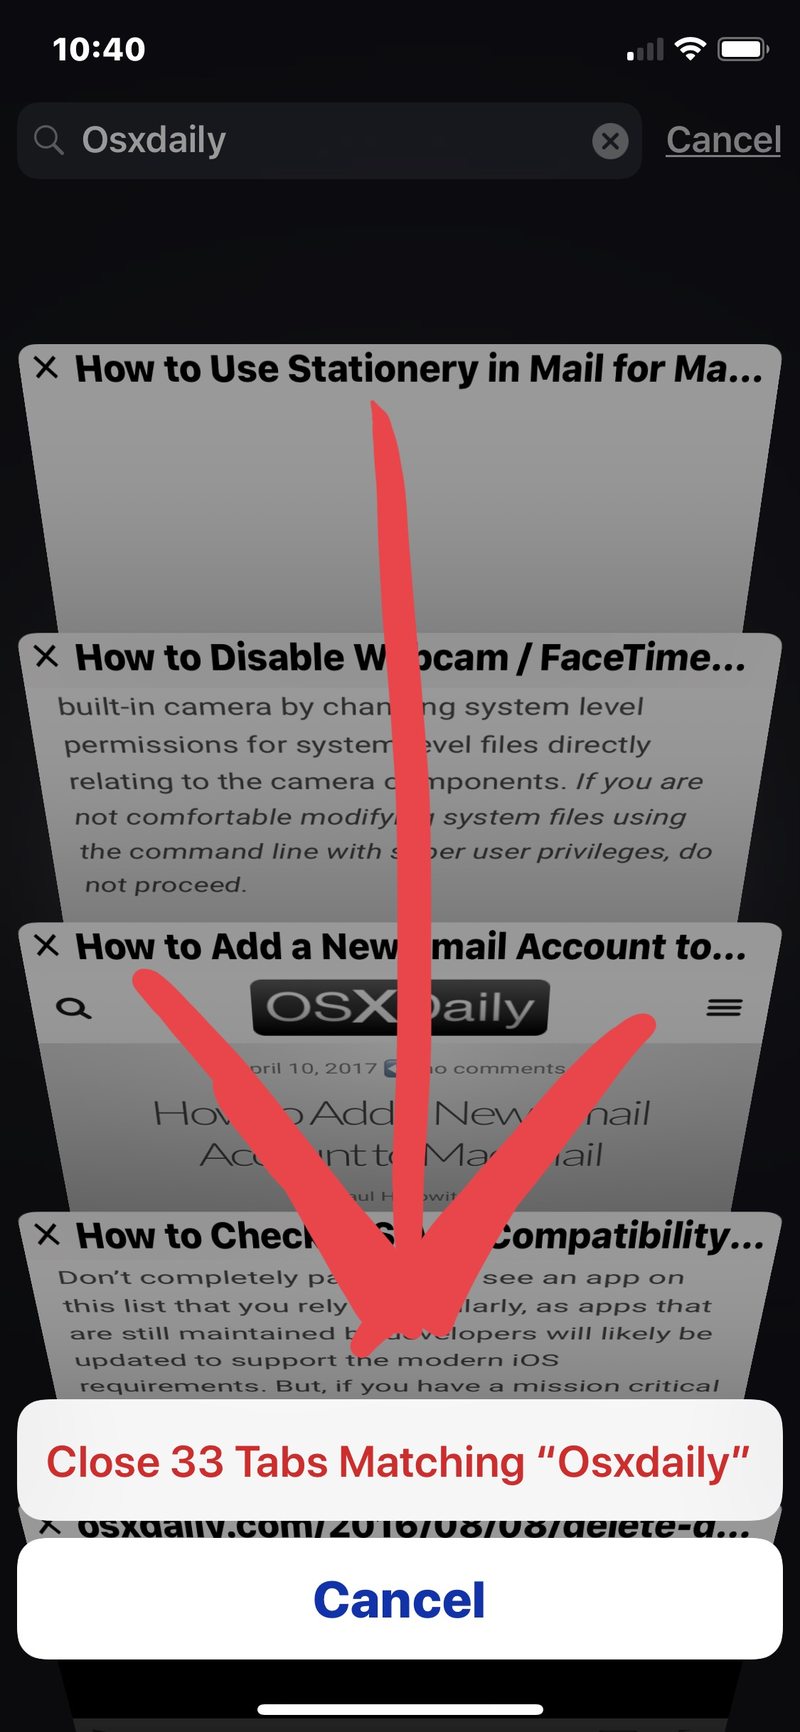 选择关闭匹配的标签适用于 iOS 的 Safari